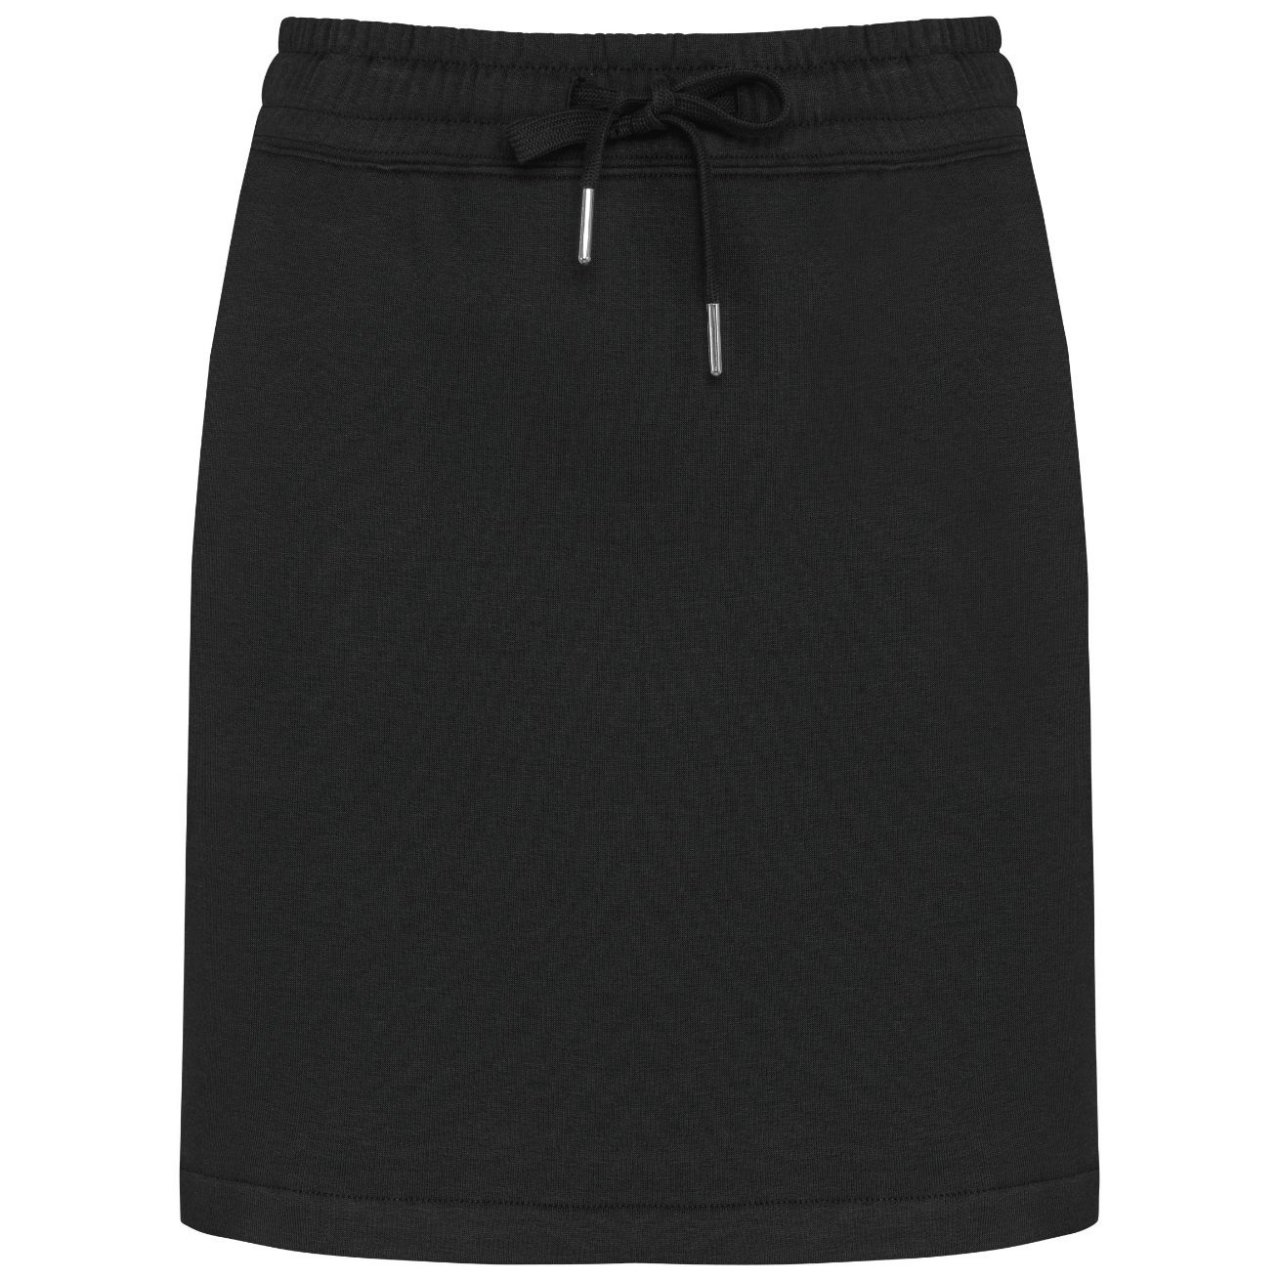 Dámská sukně Kariban - černá, XL